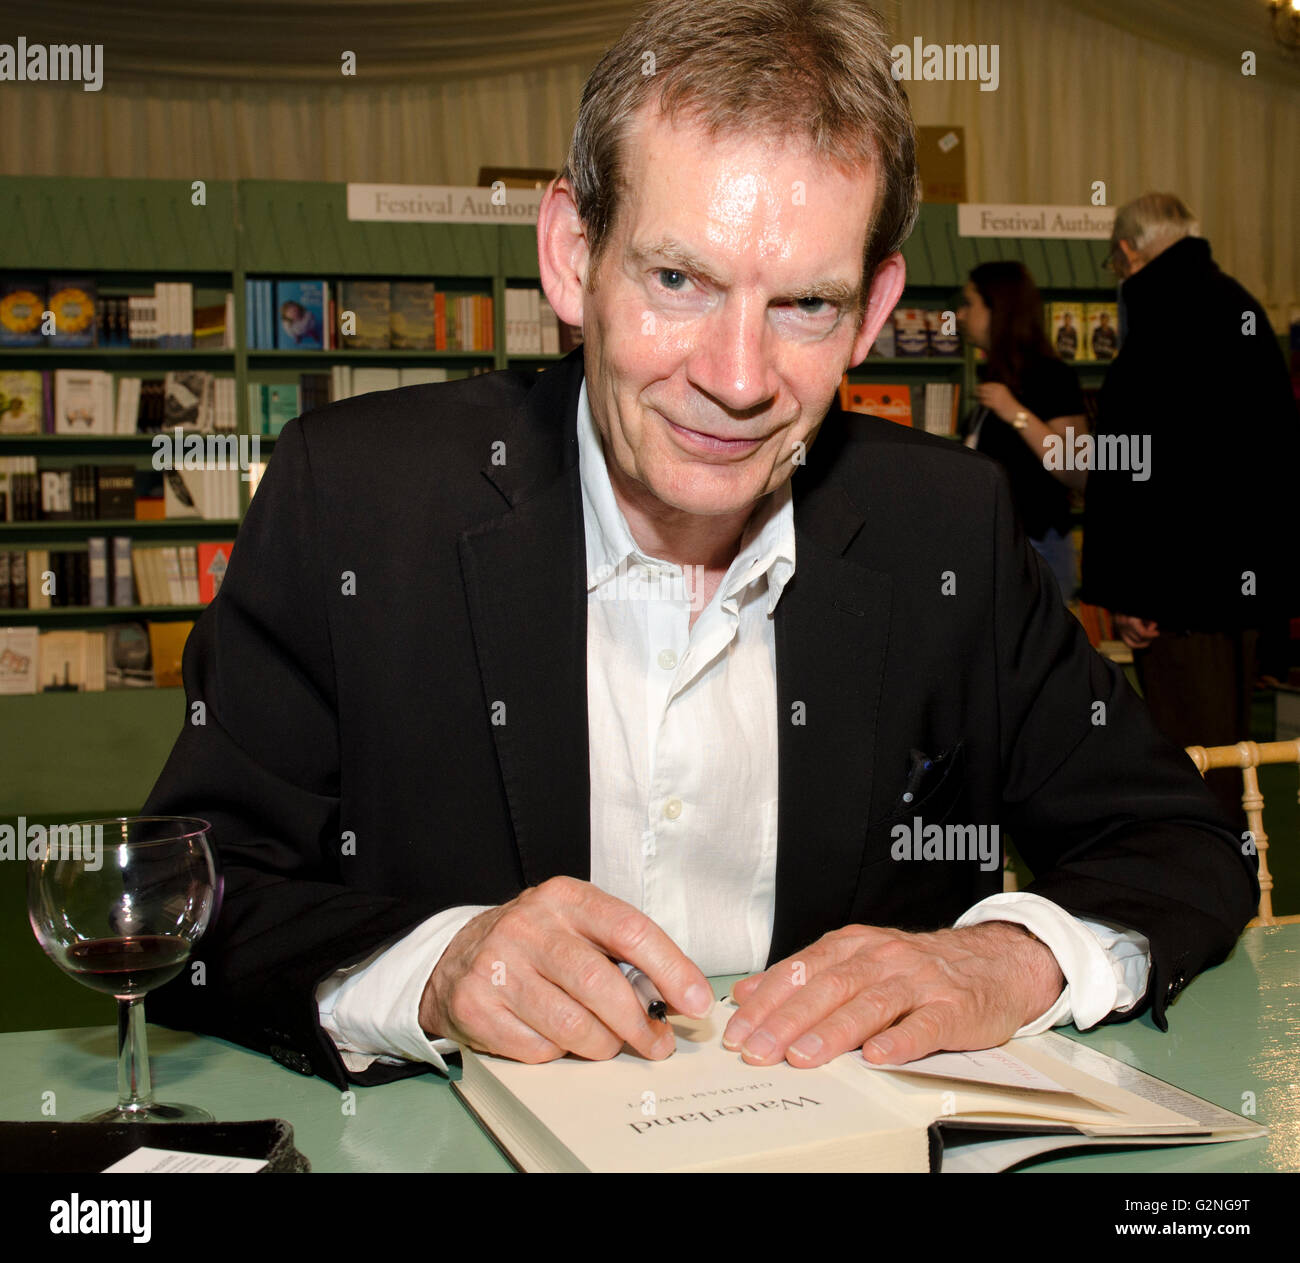 Graham Swift, romancier, auteur de Waterland et Man Booker prize winner 1996 pour les dernières commandes, signature nouveau roman Mothering Sunday Banque D'Images